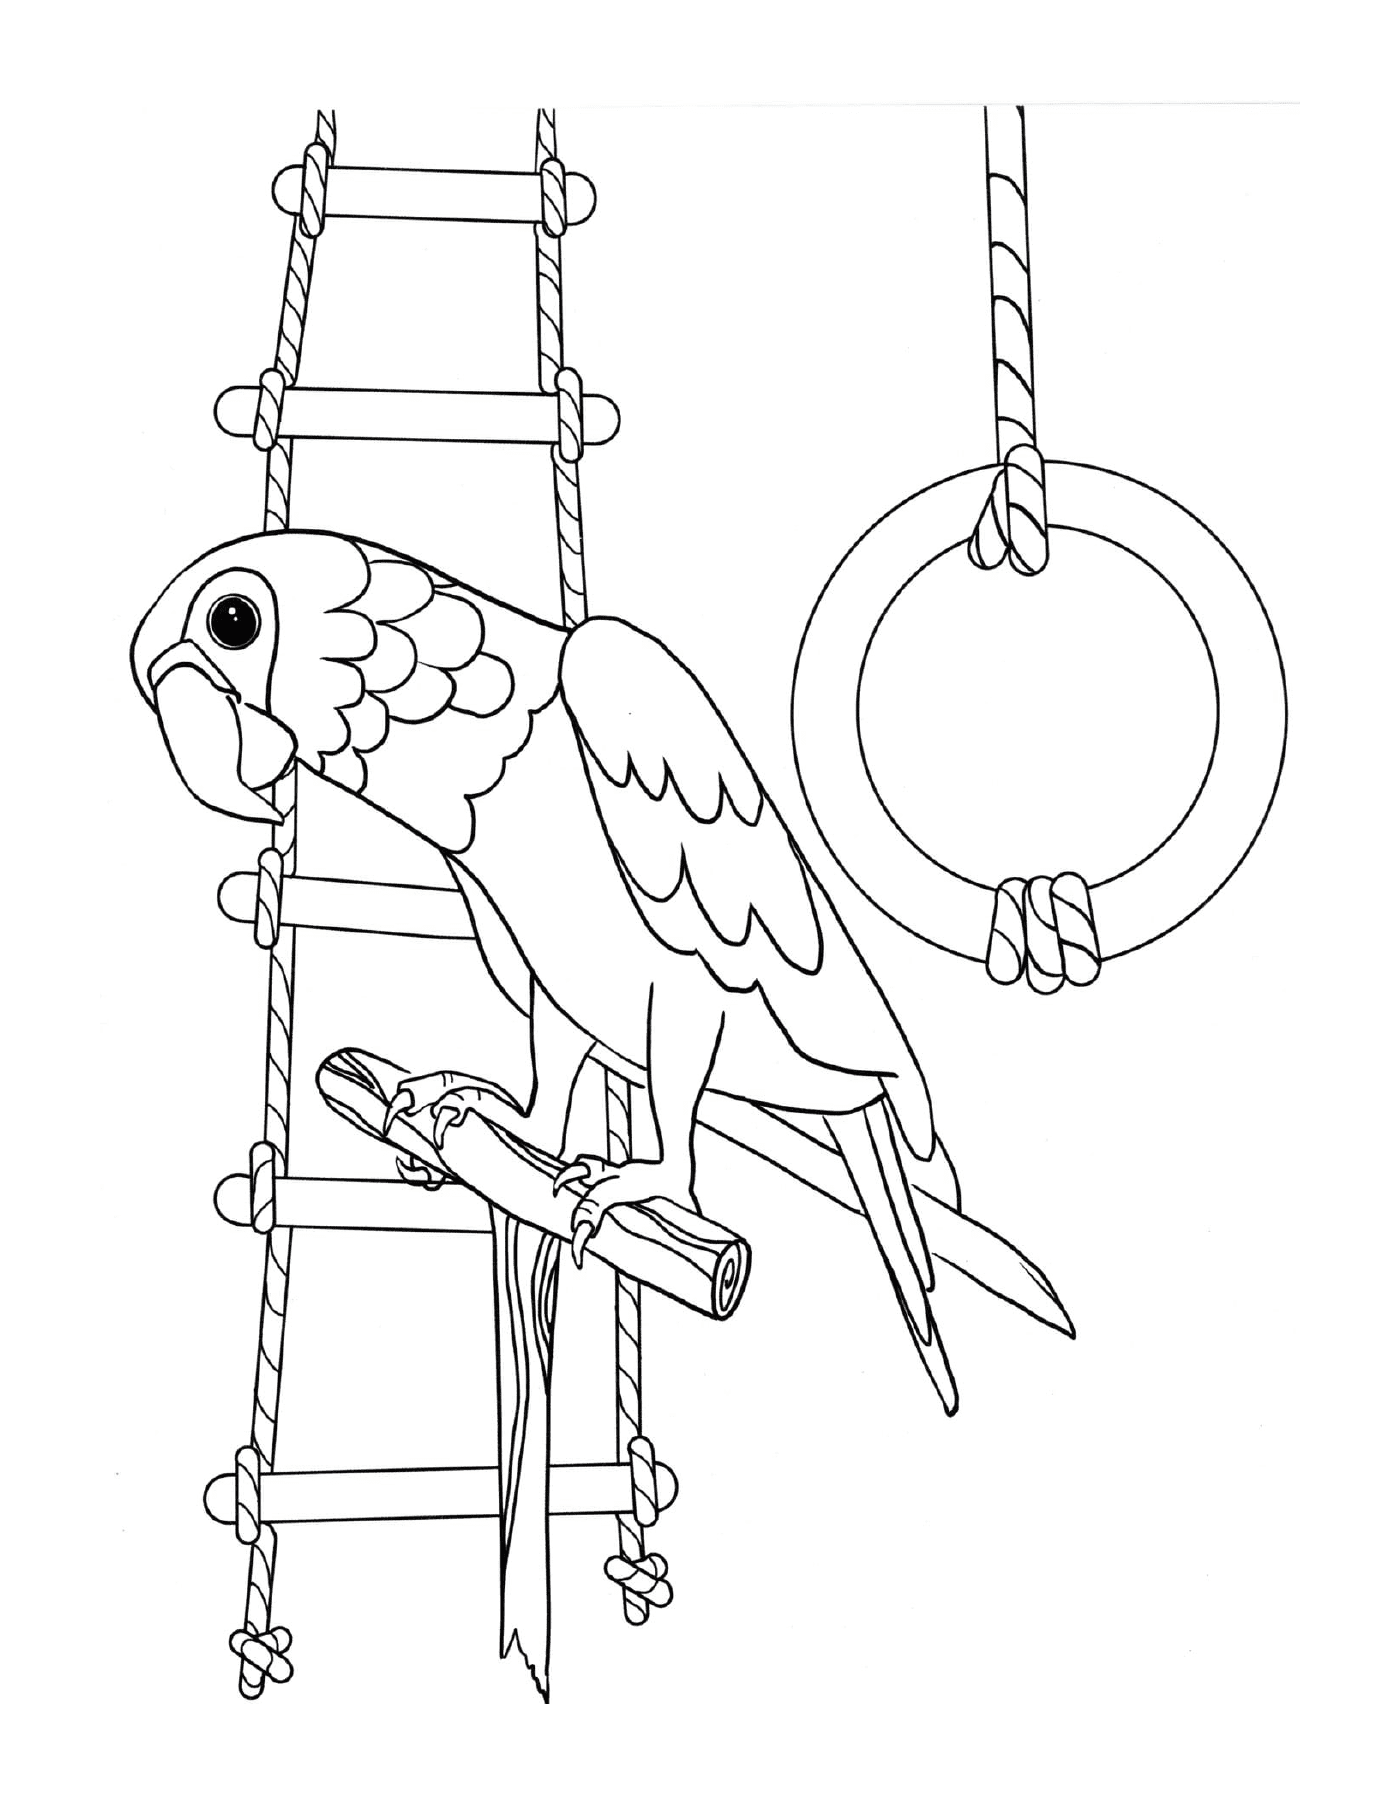  Perrot, der gerne spielt, Vogel thront auf einer Leiter 